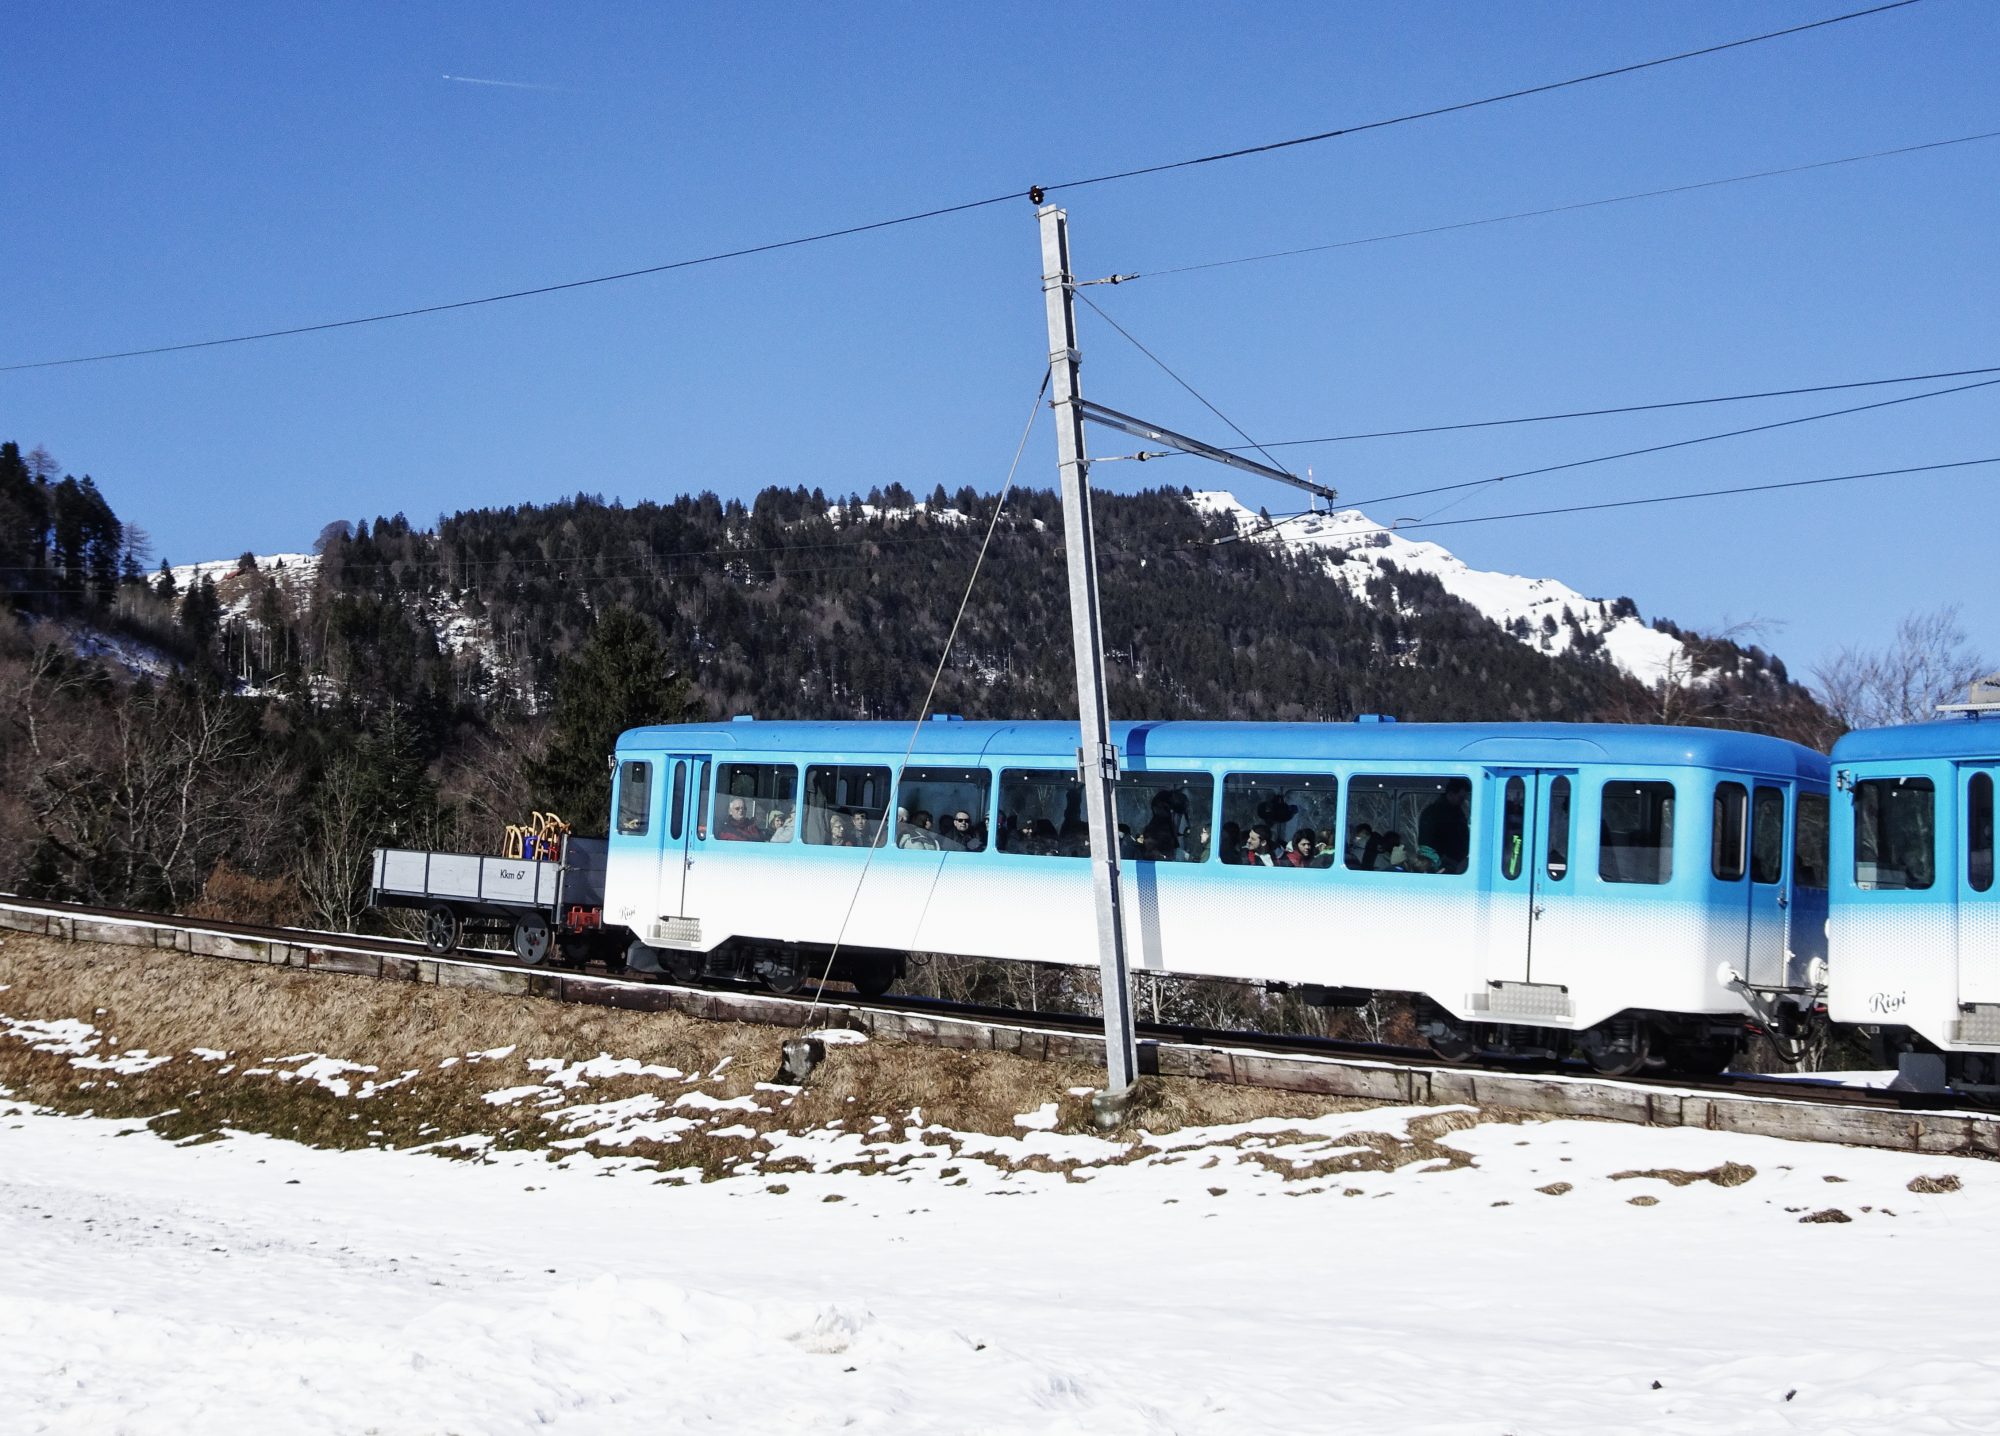 Schweiz, Luzern, Zürich, Rigi, Winterwanderung, Rigibahn, Zahnradbahn